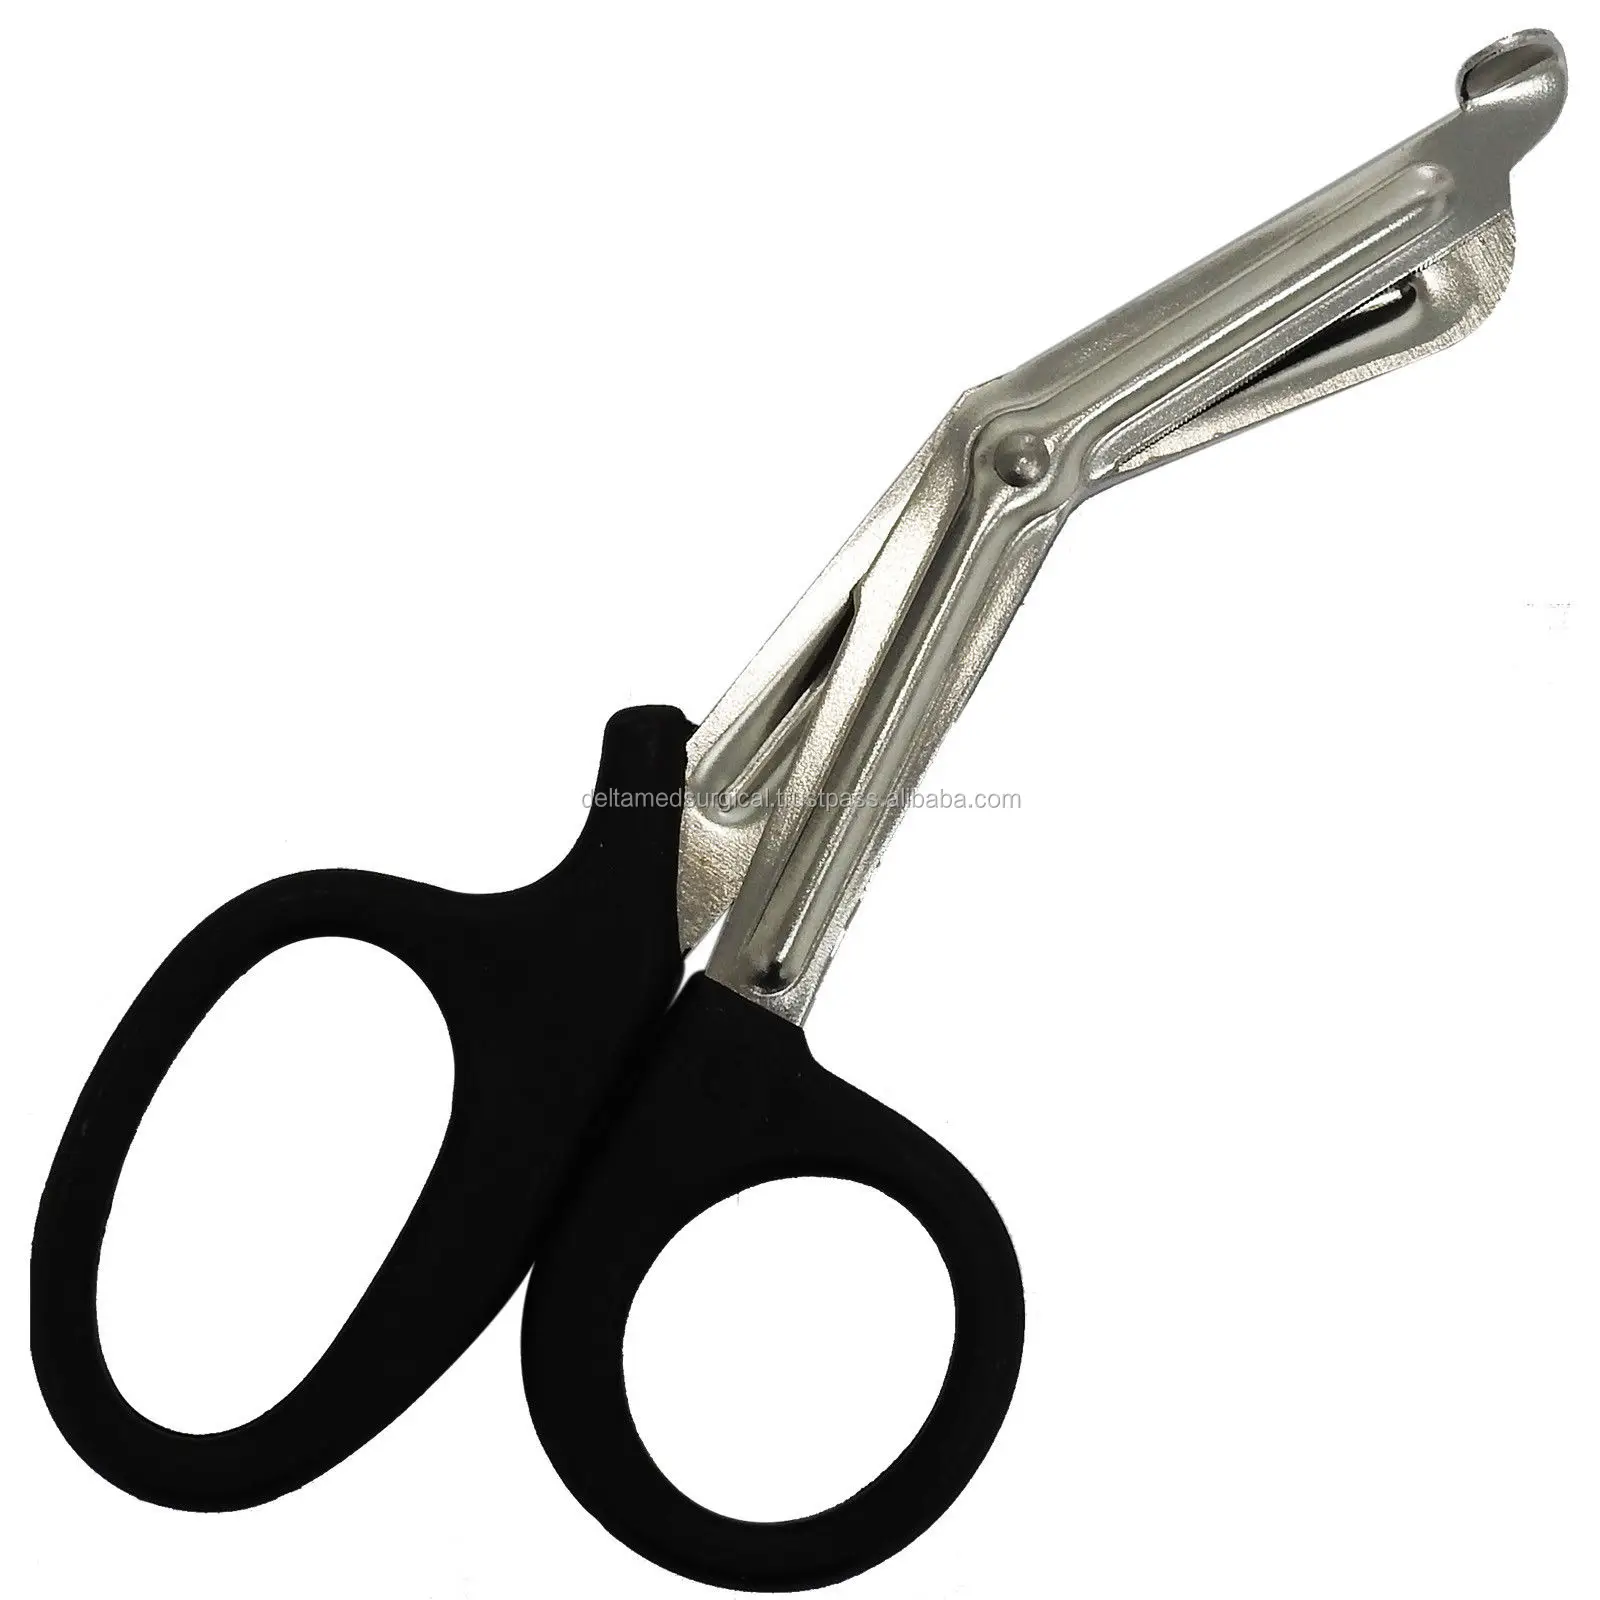 types of scissors